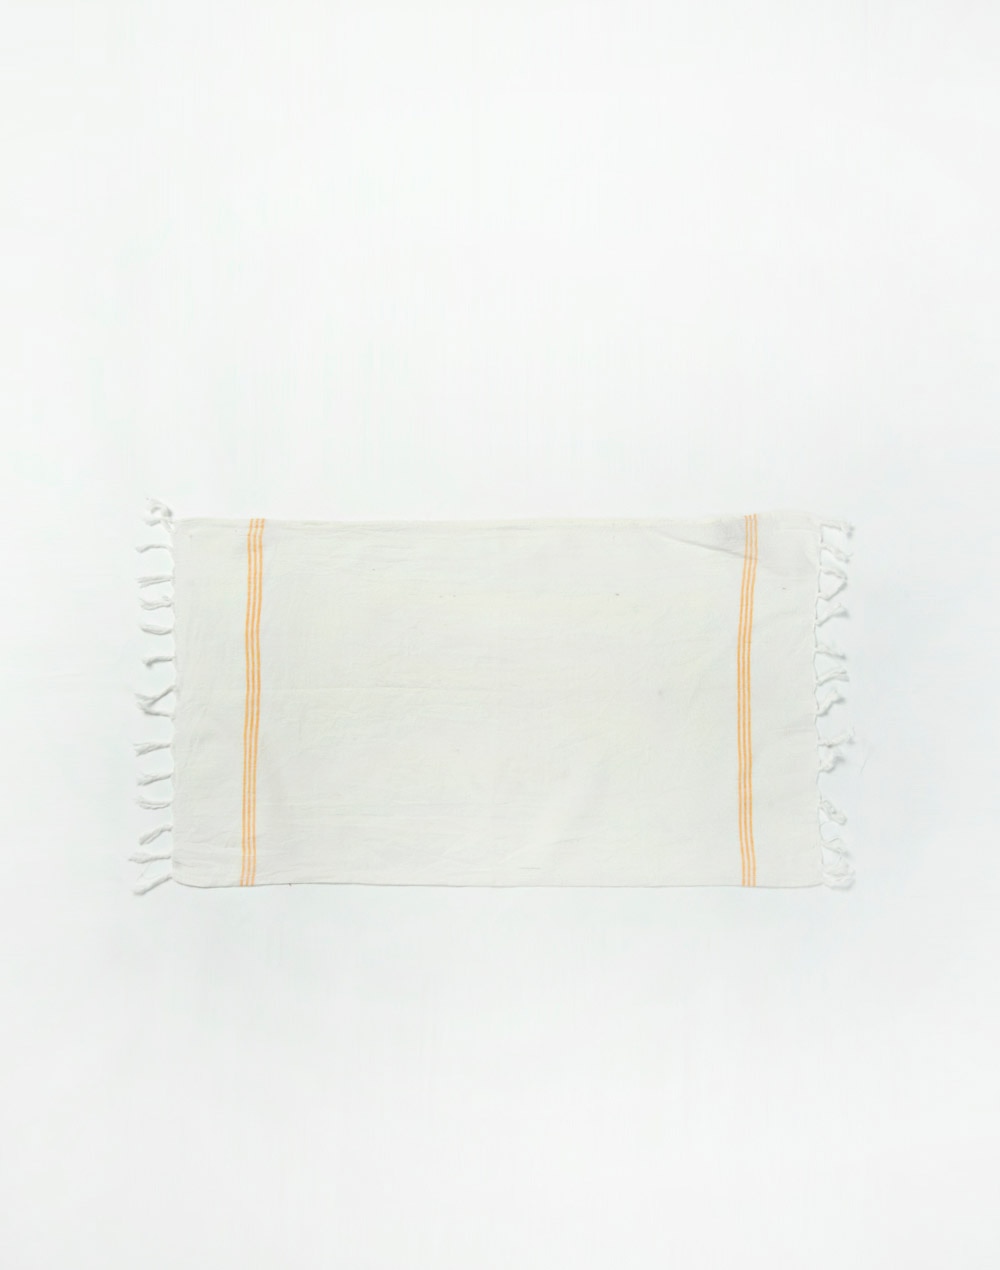 Yellow Bana Cotton Gamcha Towel Set Of 2